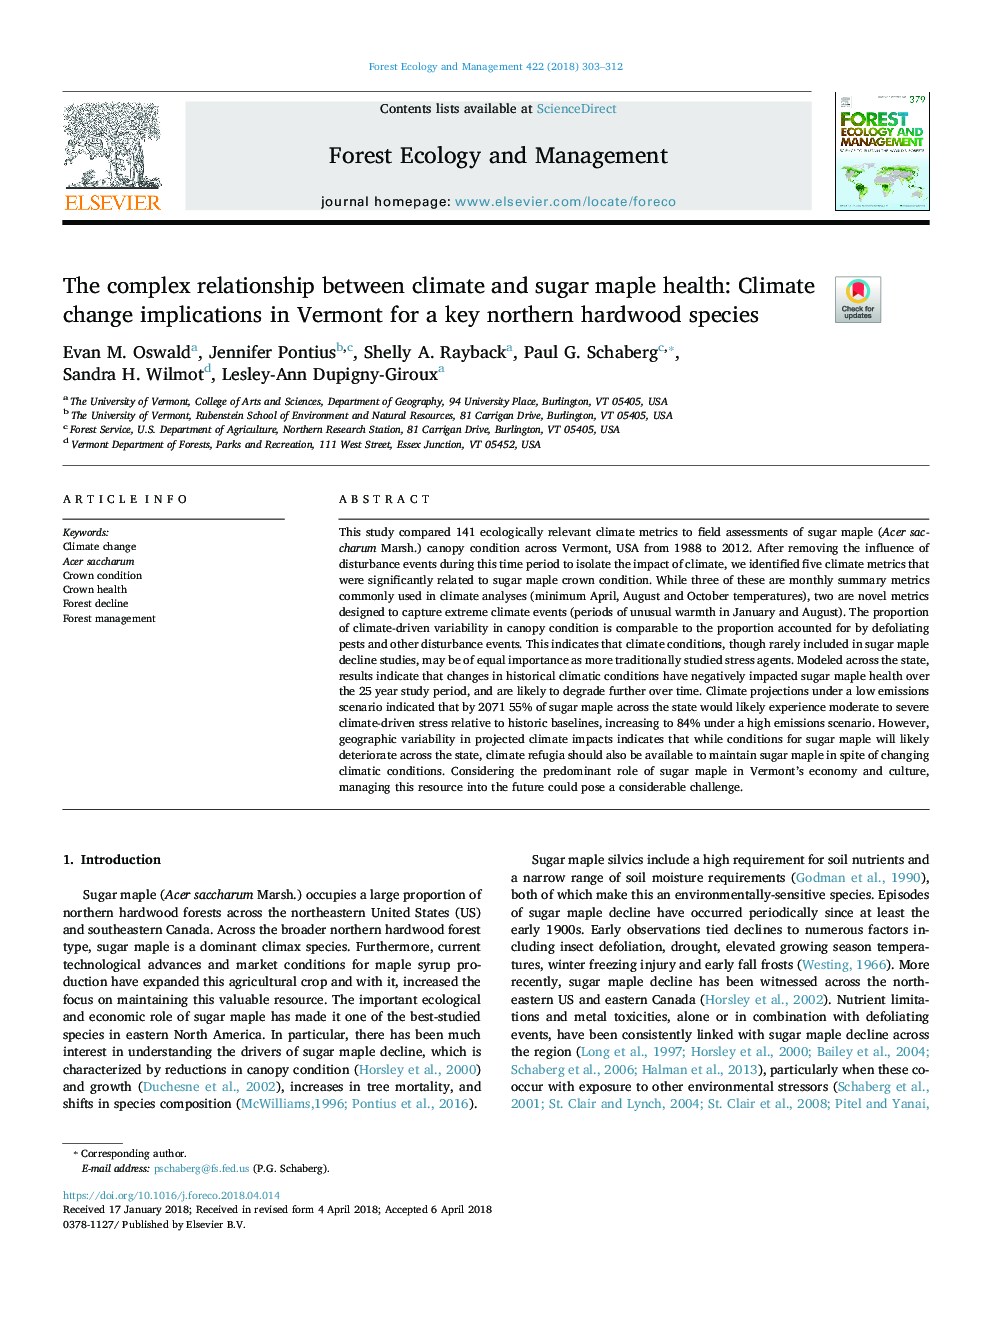 رابطه پیچیده بین آب و هوا و سلامت قارچ افراطی: پیامدهای تغییرات آب و هوا در ورمونت برای یک گونه اصلی چوب جنگلی شمالی 